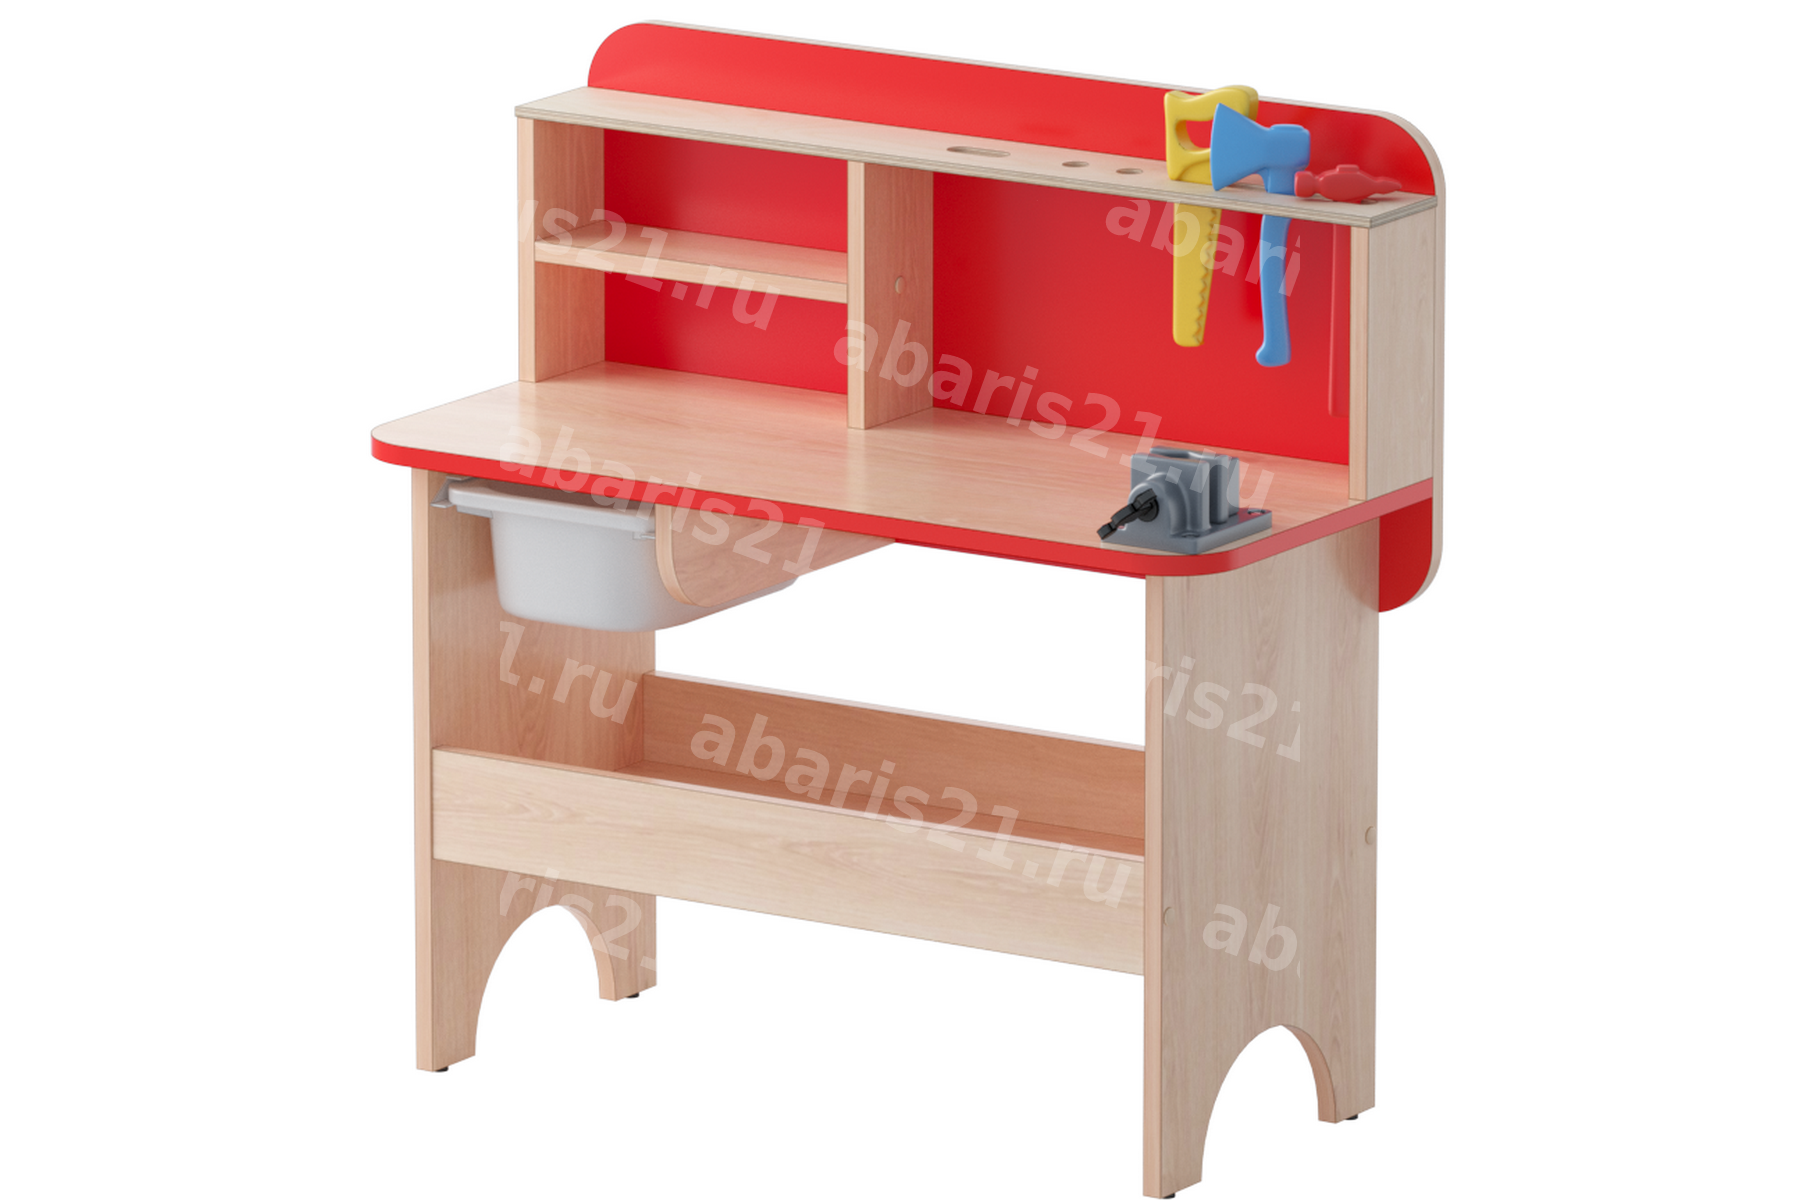 Мебель детская игровая ВЕРСТАК - Абарис